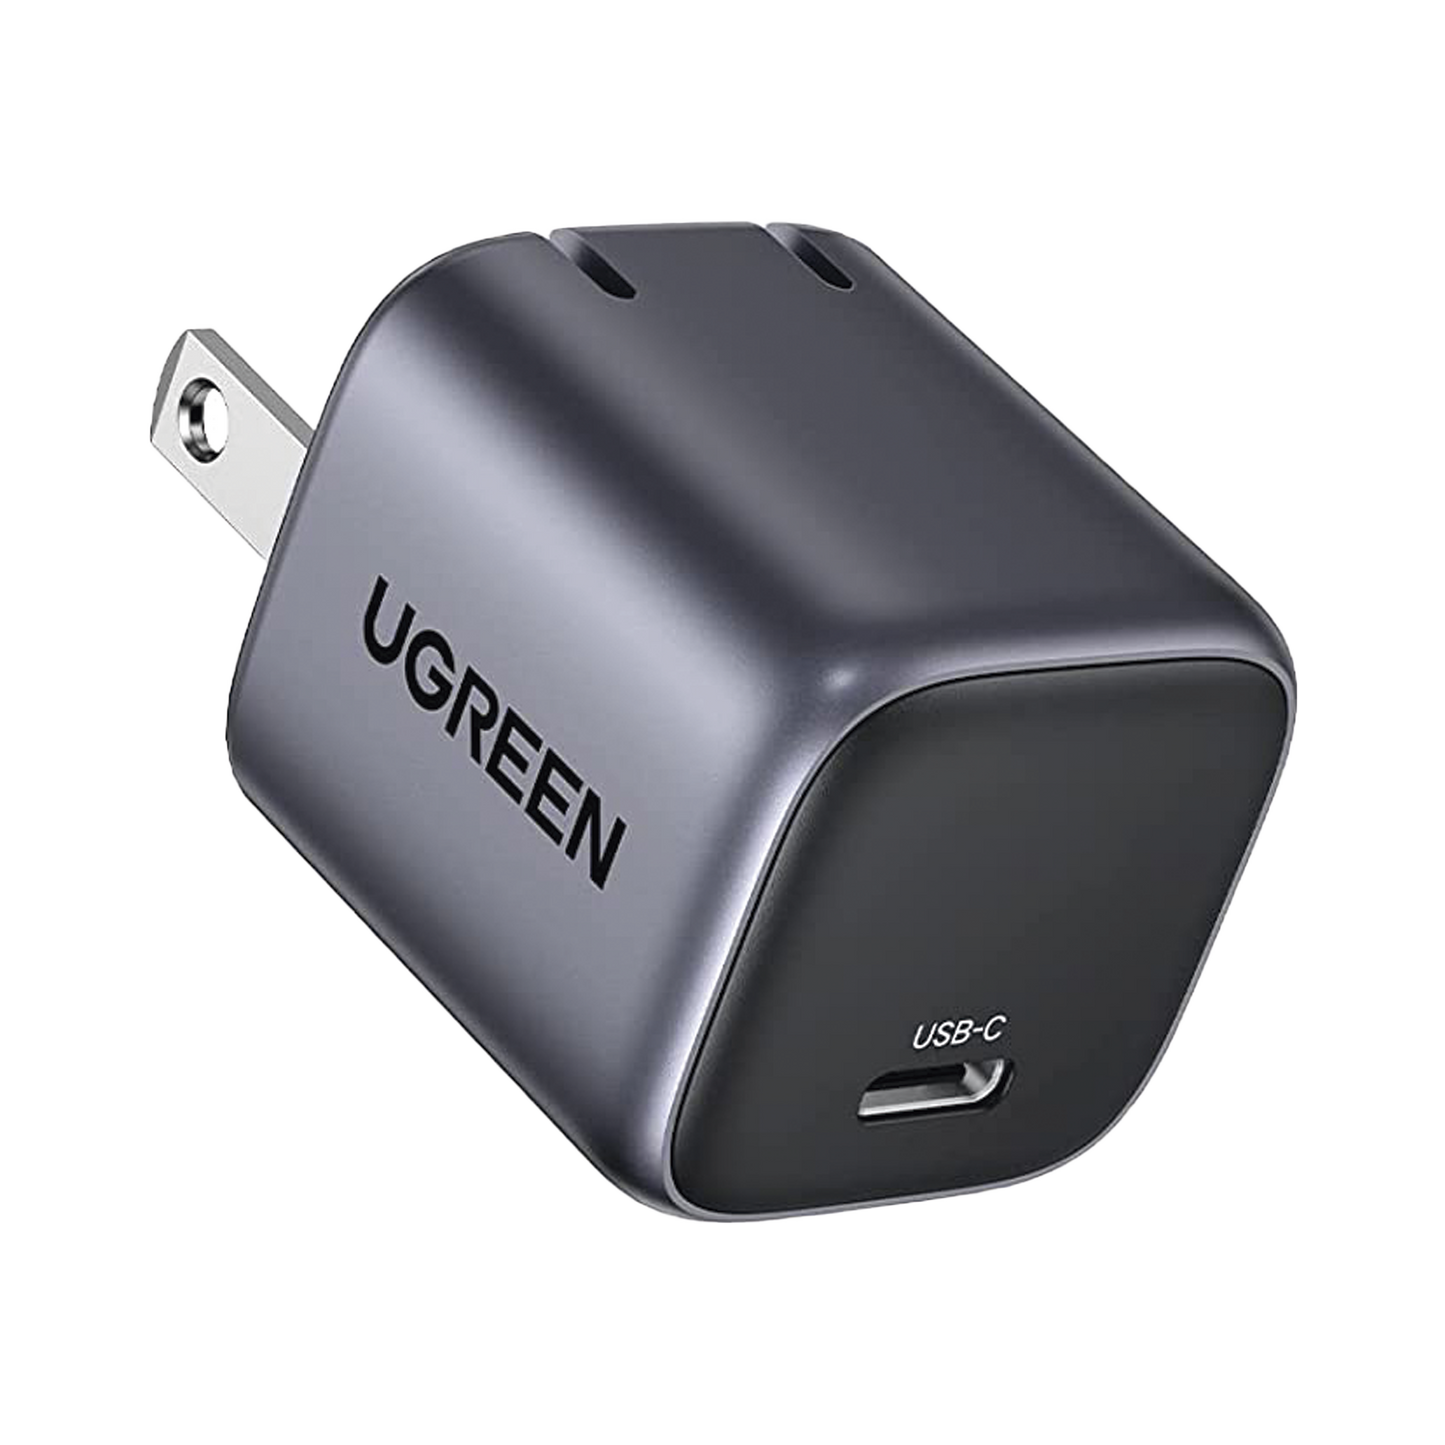 Cargador Mini de 30W serie Nexode | 1 USB-C de Carga Rápida | Tecnología GaN II | Power Delivery 3.0 | Quick Charge 4.0 | Carga Inteligente | Múltiple Protección  | Mayor Eficiencia Energética | Tamaño Compacto |